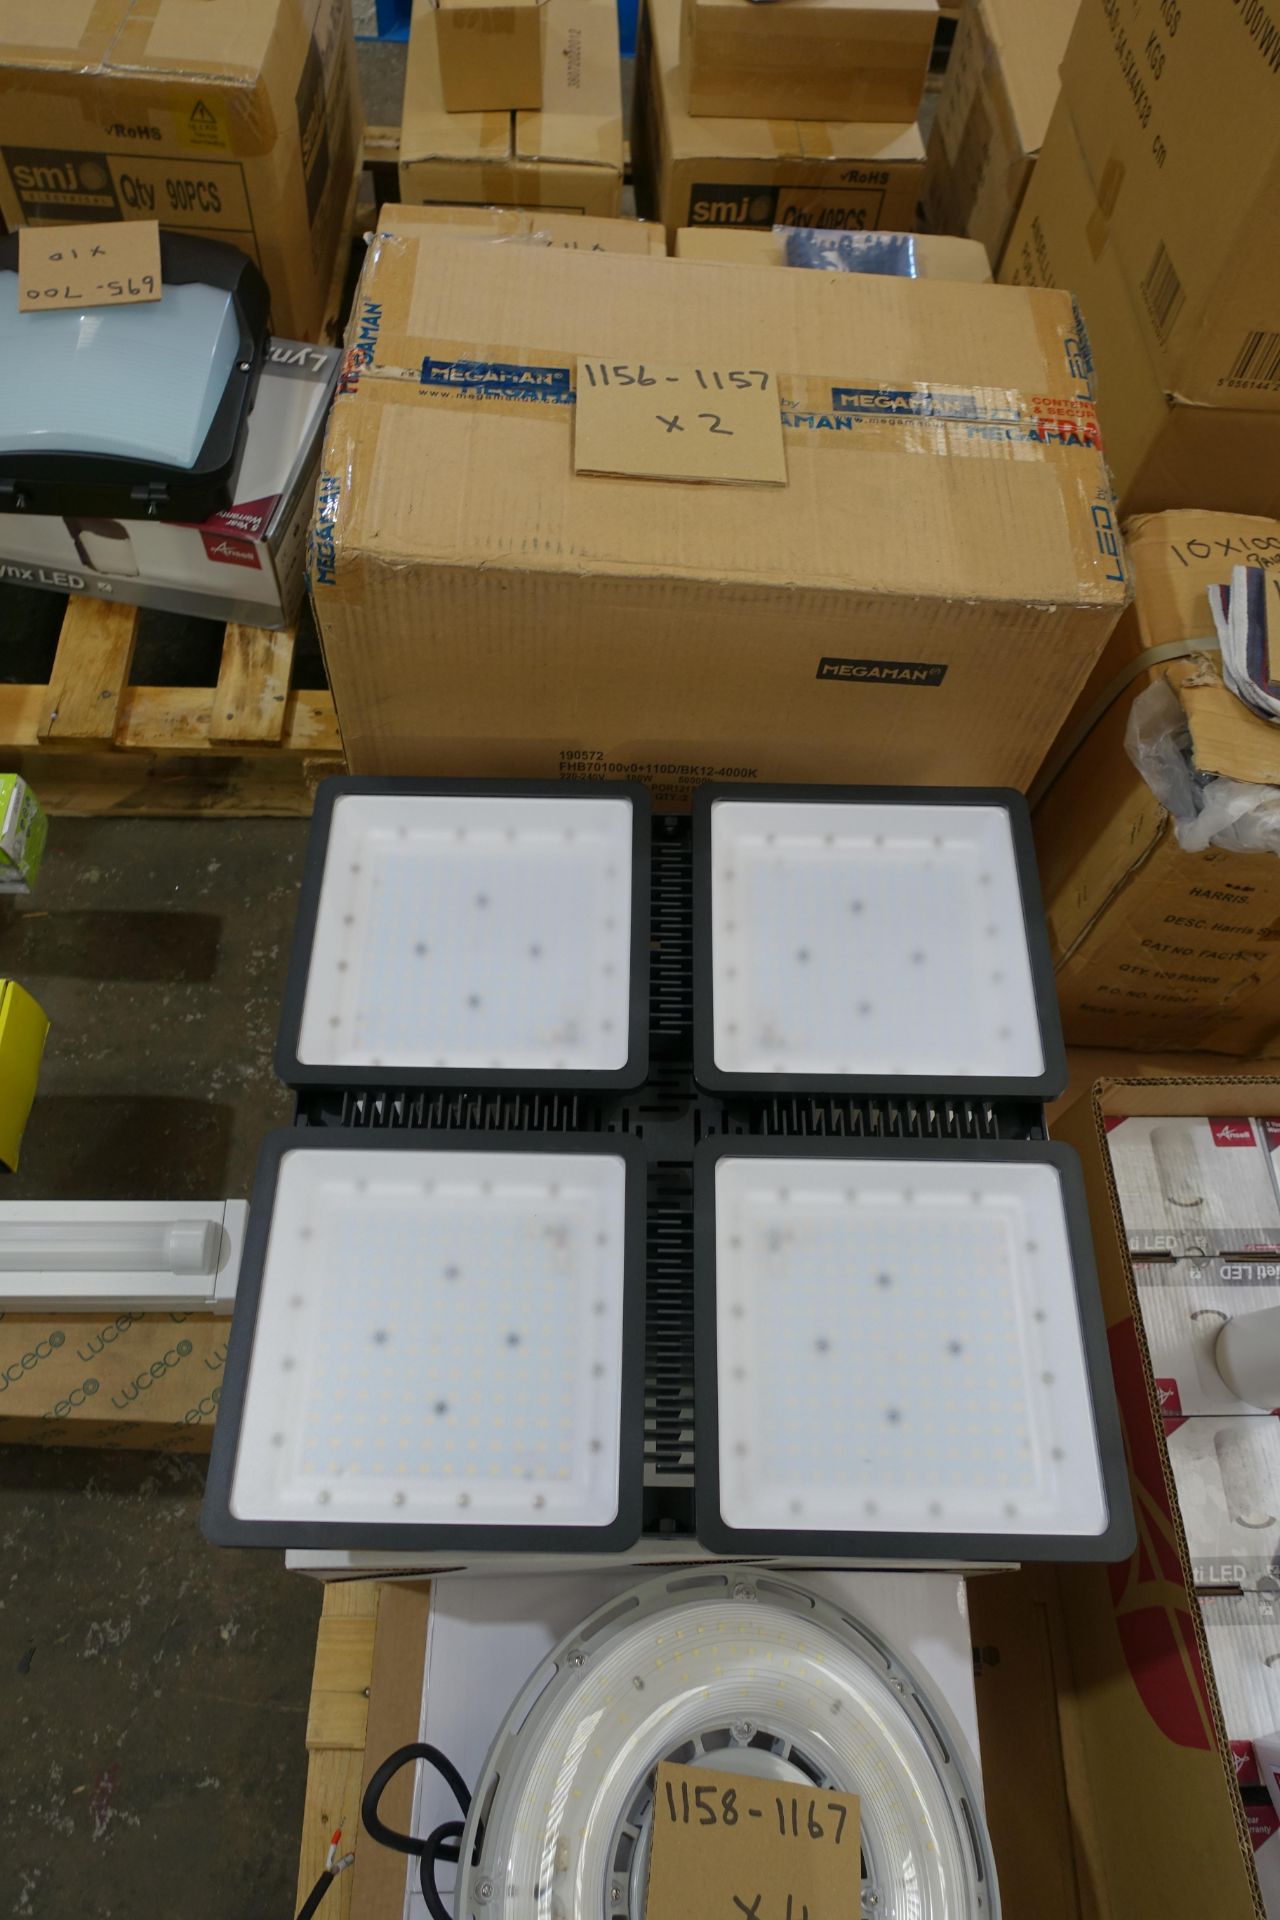 2 X Megaman FHB70100V0+110D 180W LED Highbay Fittings 4000k Cool White IP65 22000 Lumen Flicker